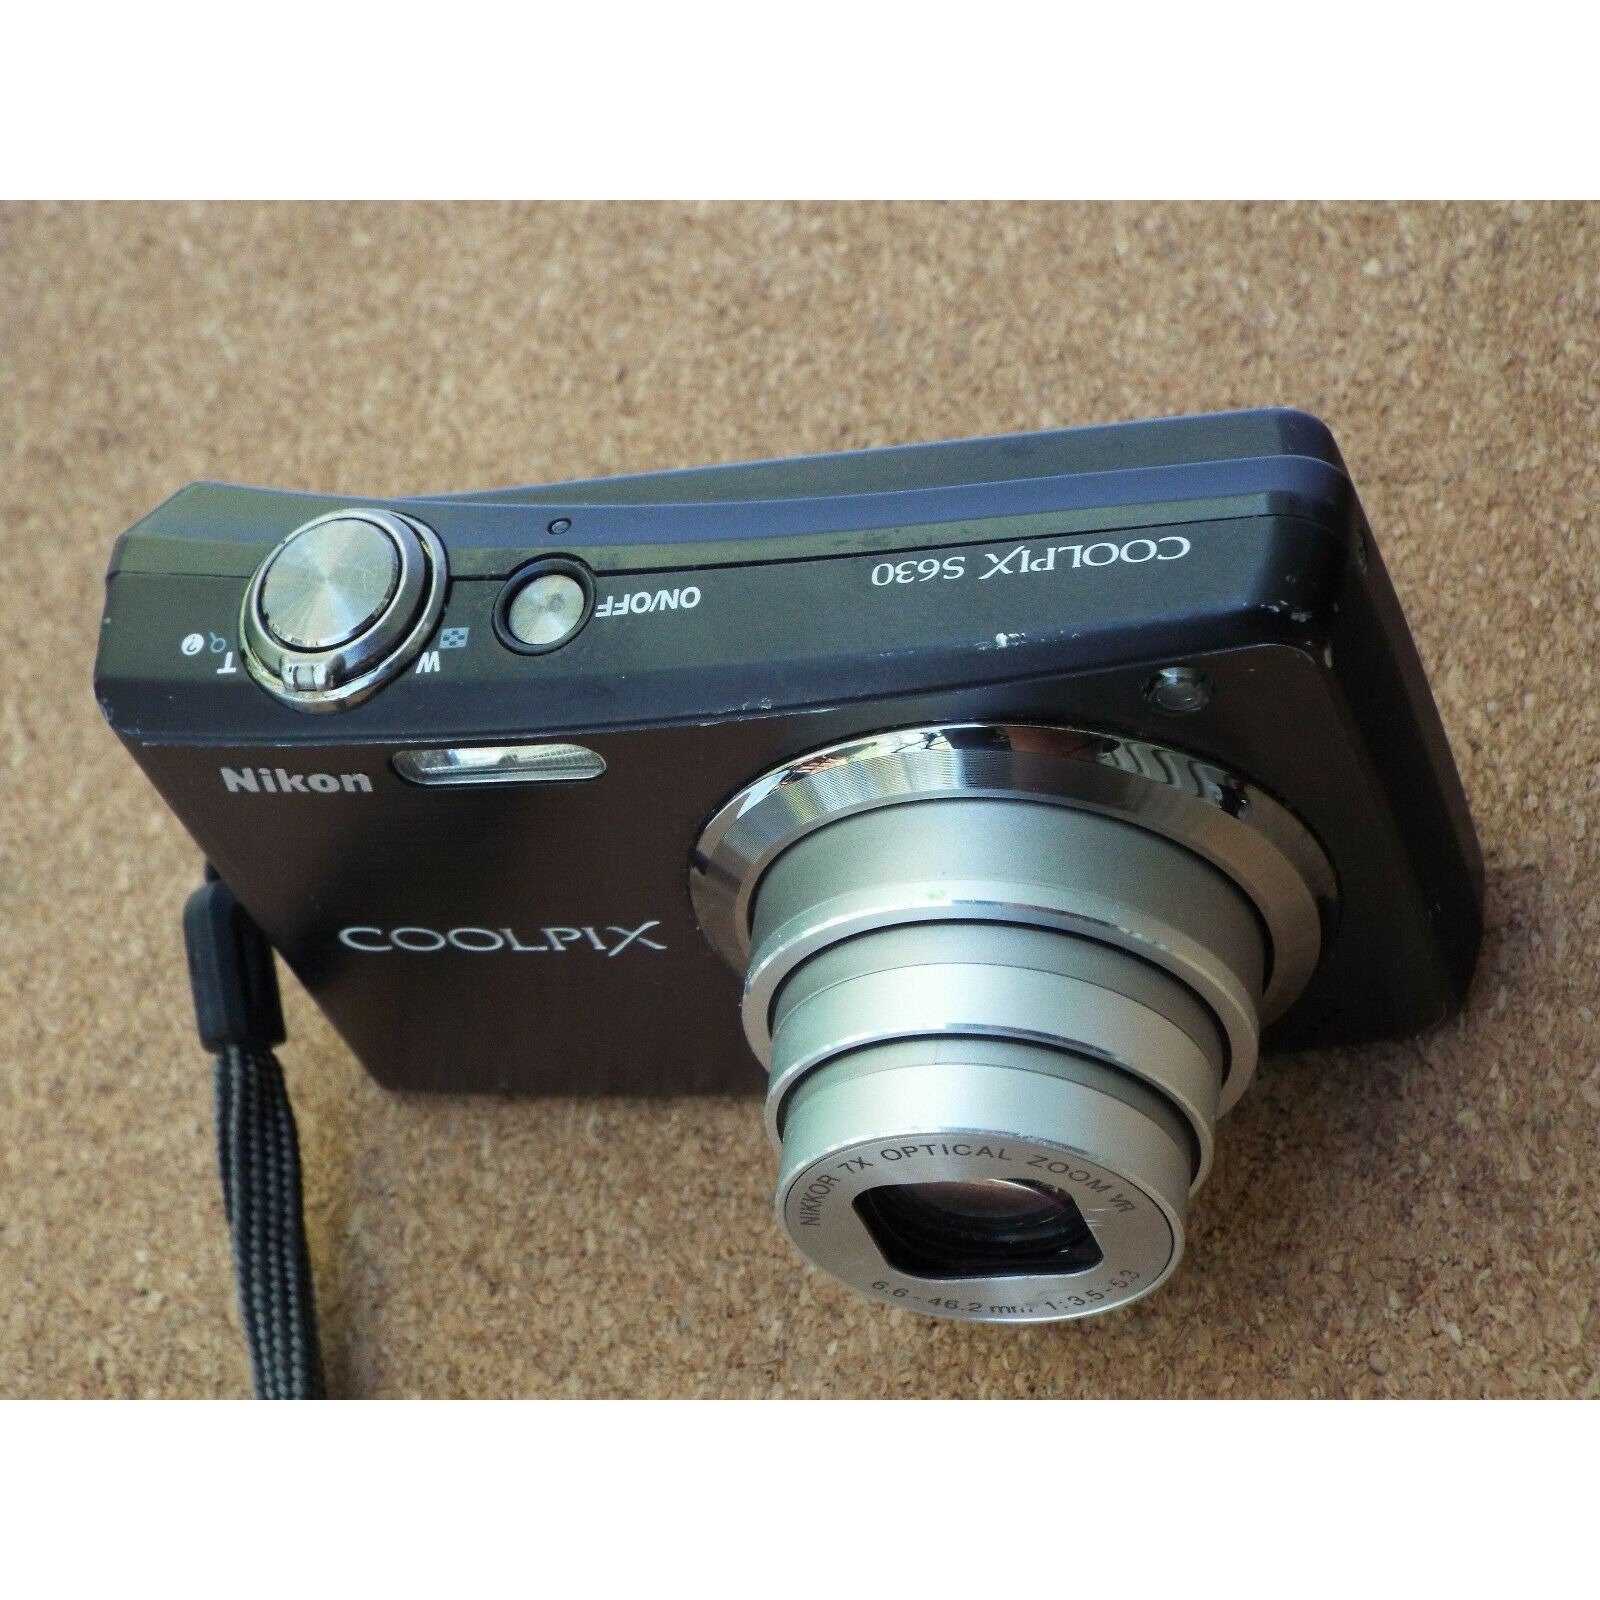 Nikon COOLPIX S630 12.0MP Digital Camera - Black